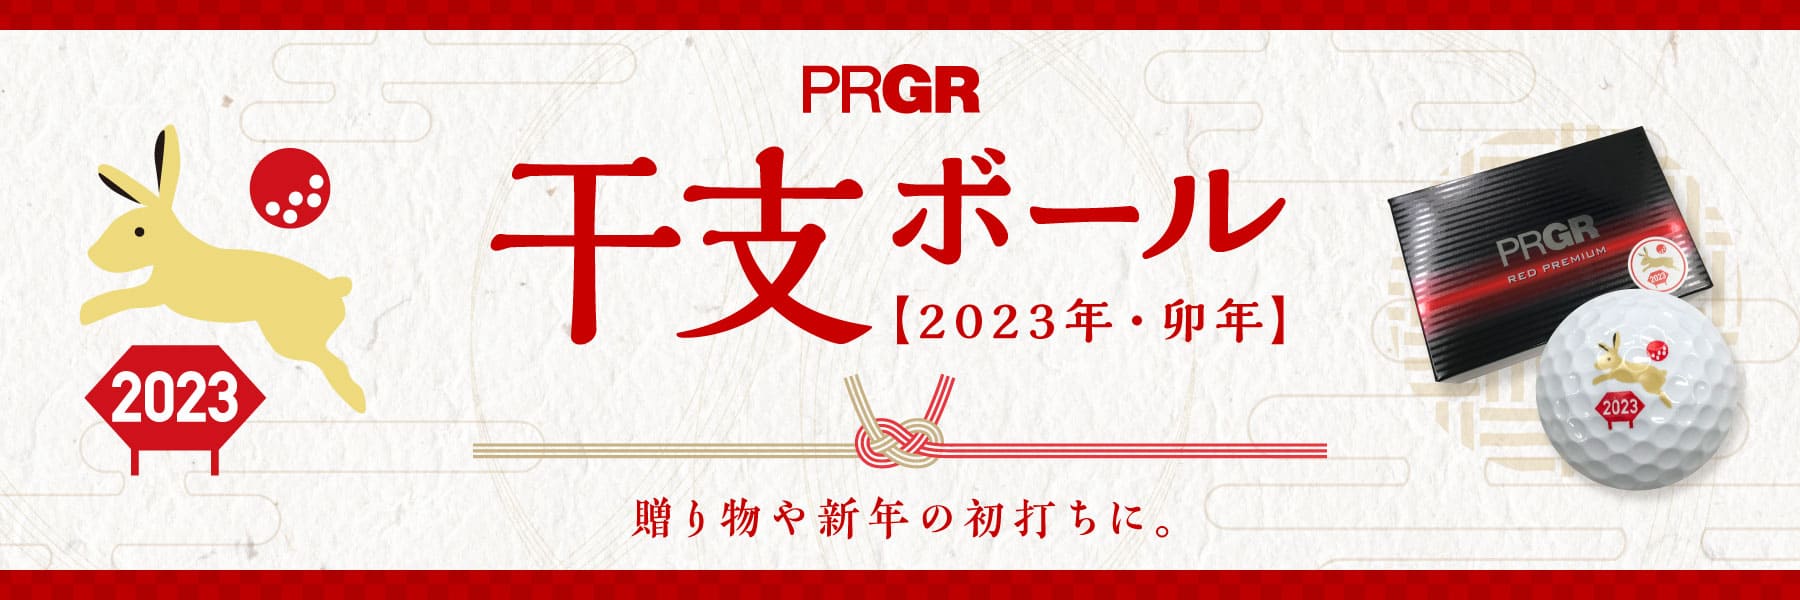 【2023年干支マーク入り】PRGR RED PREMIUM ボール 半DZ〔6球入り〕